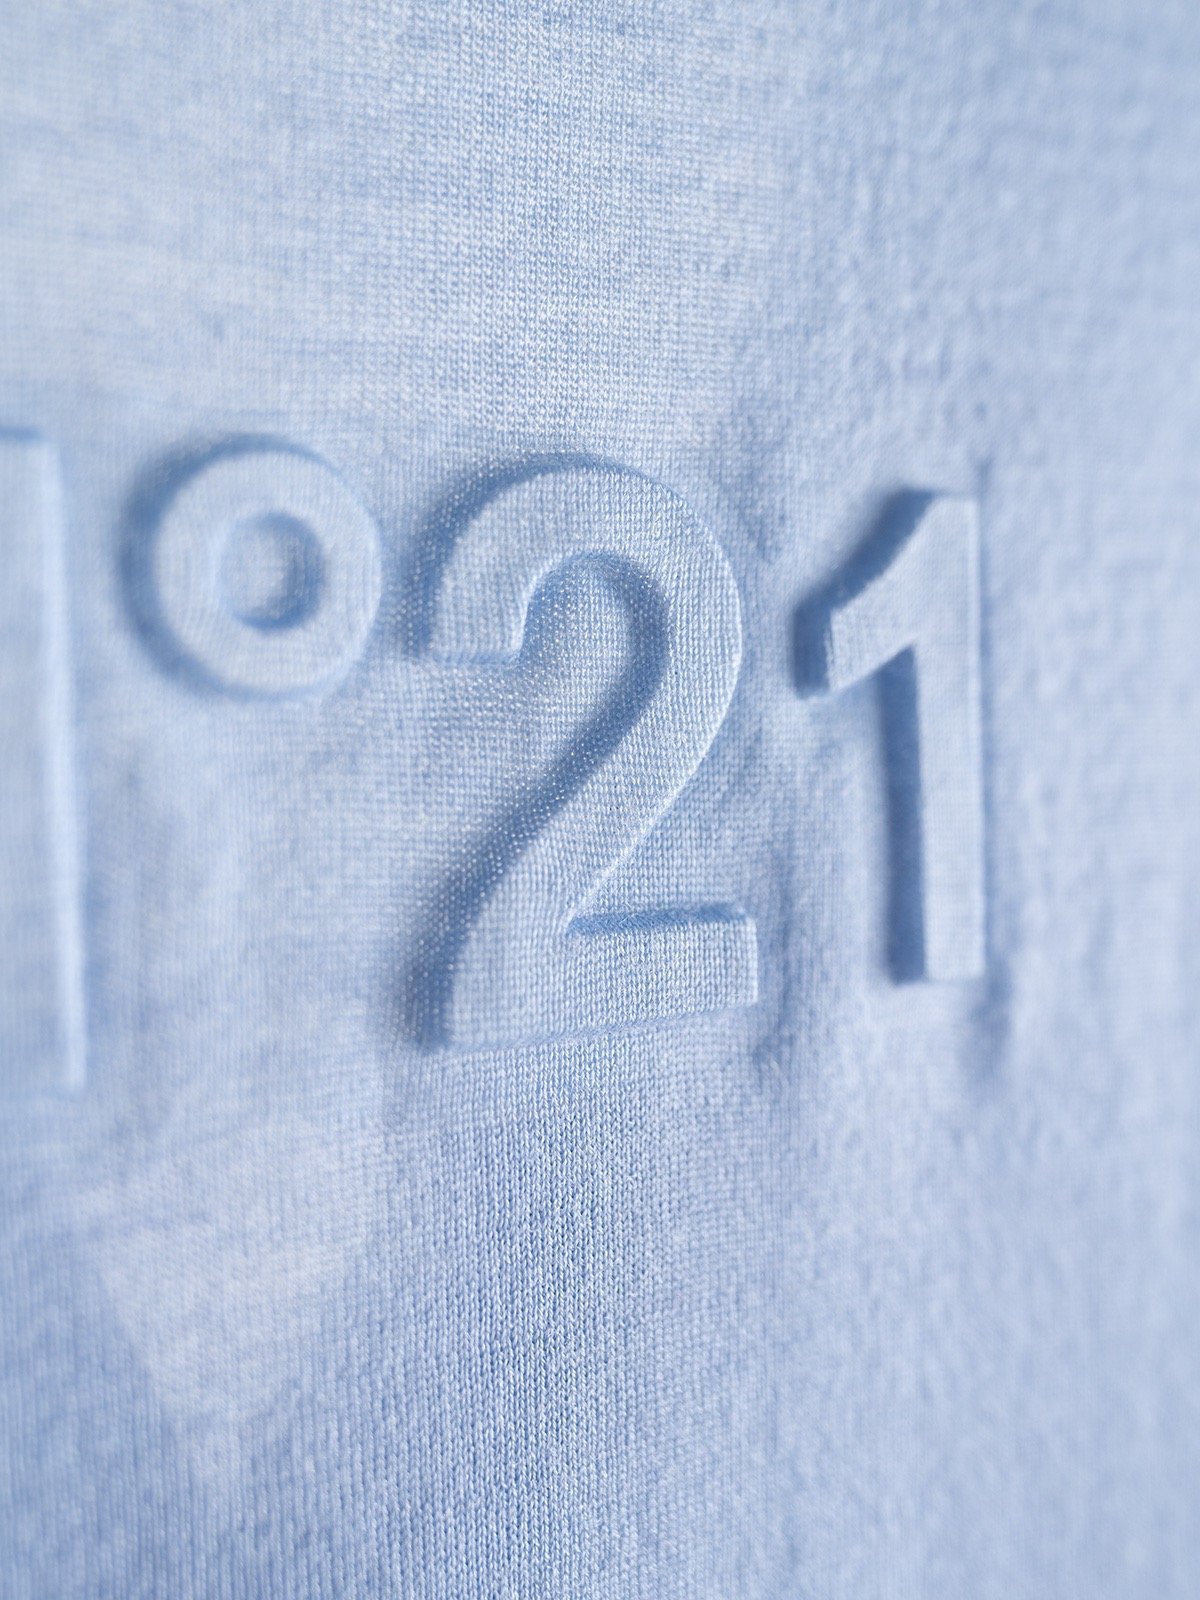 n21羊毛开衫16针织机单边织法前幅双口袋后幅有压印品牌logo贝壳纽扣刻有品牌logo三色现货发售sm